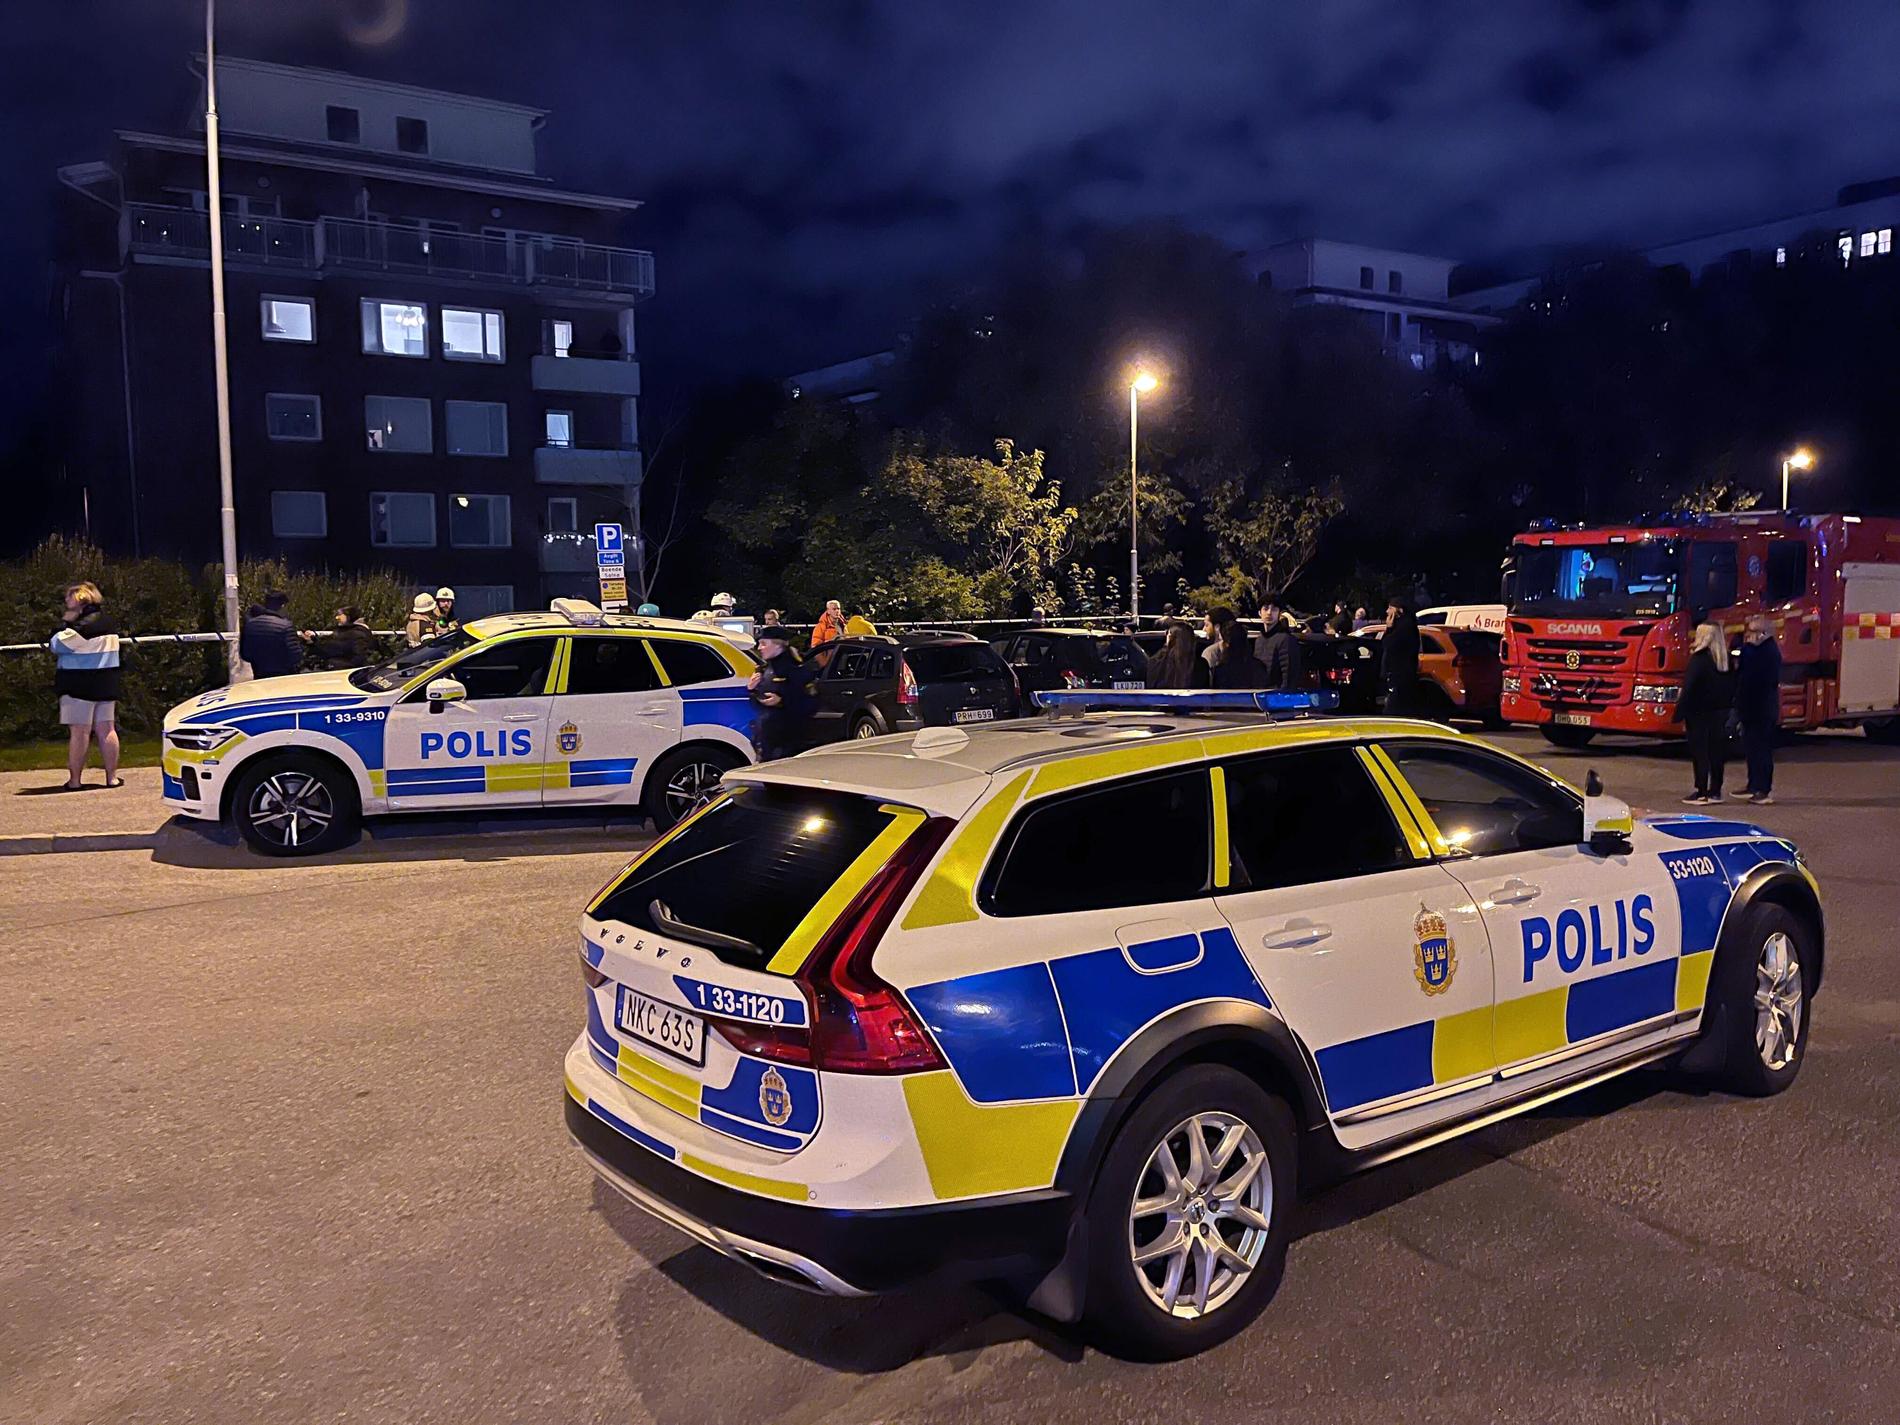 Polis på plats i Huvudsta i Solna sent på torsdagskvällen.